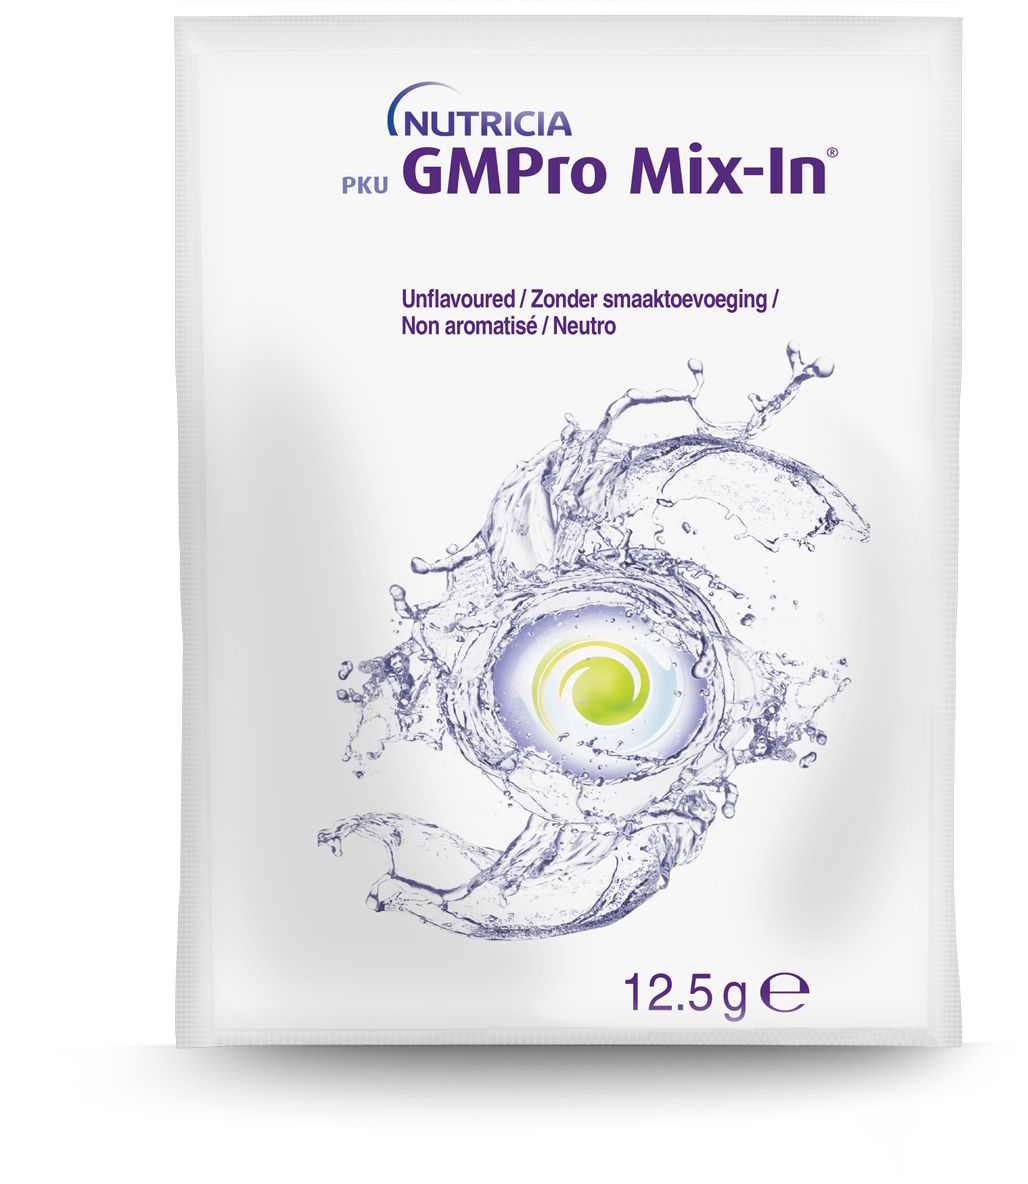 en-GB,PKU GMPro Mix-In